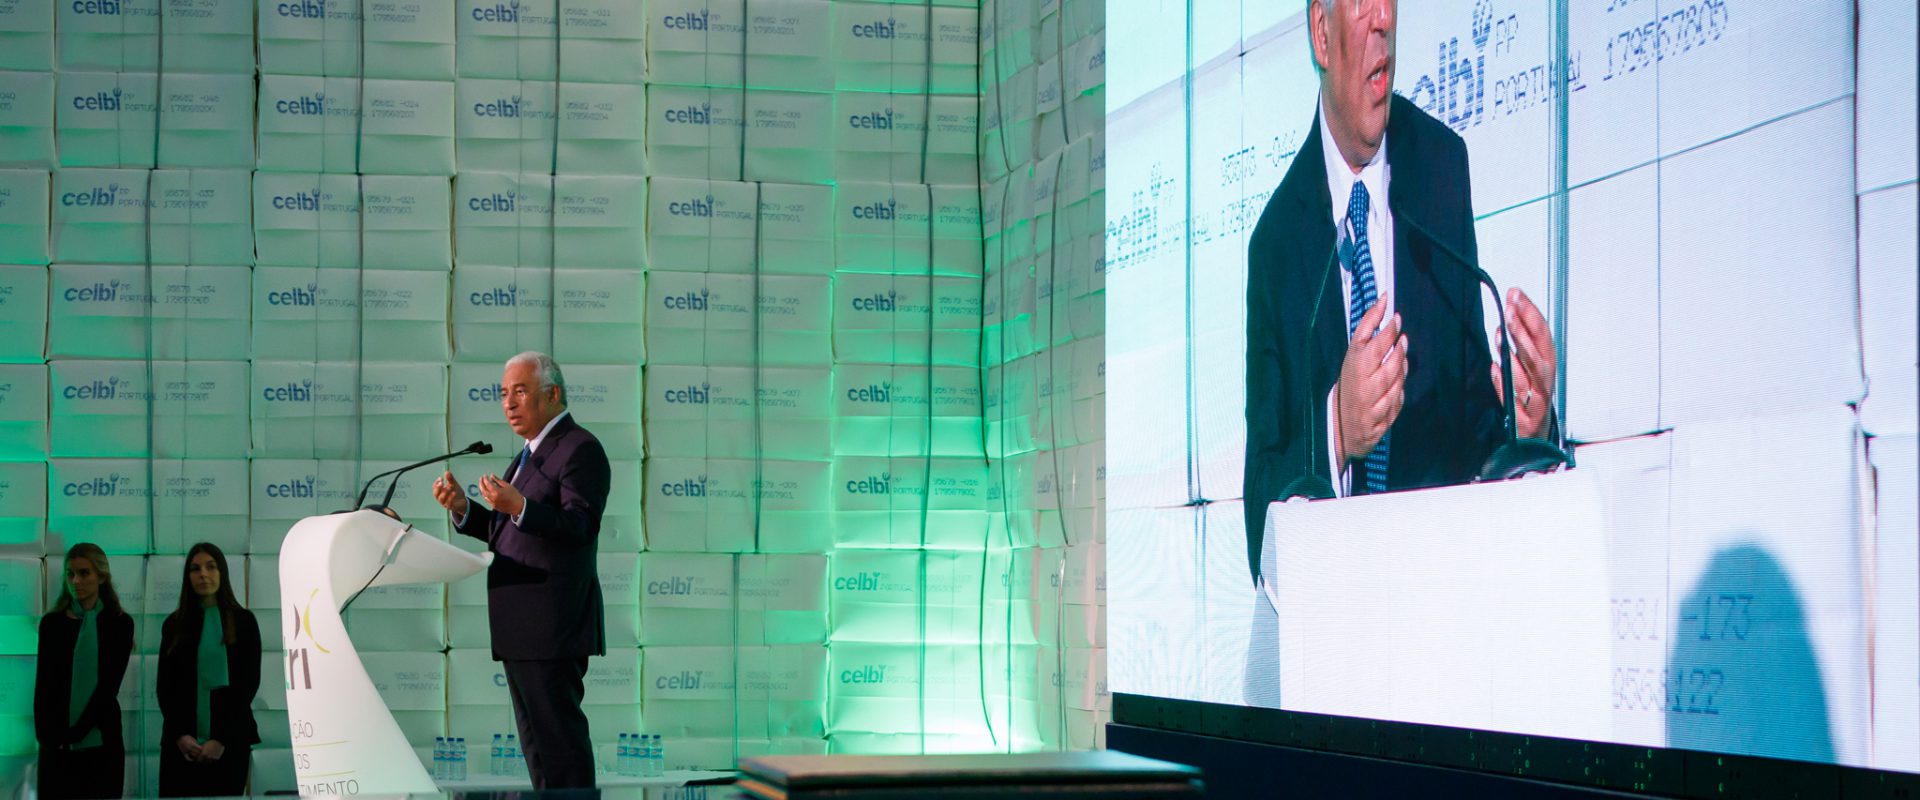 Primeiro-ministro, António Costa, discursa na Celbi